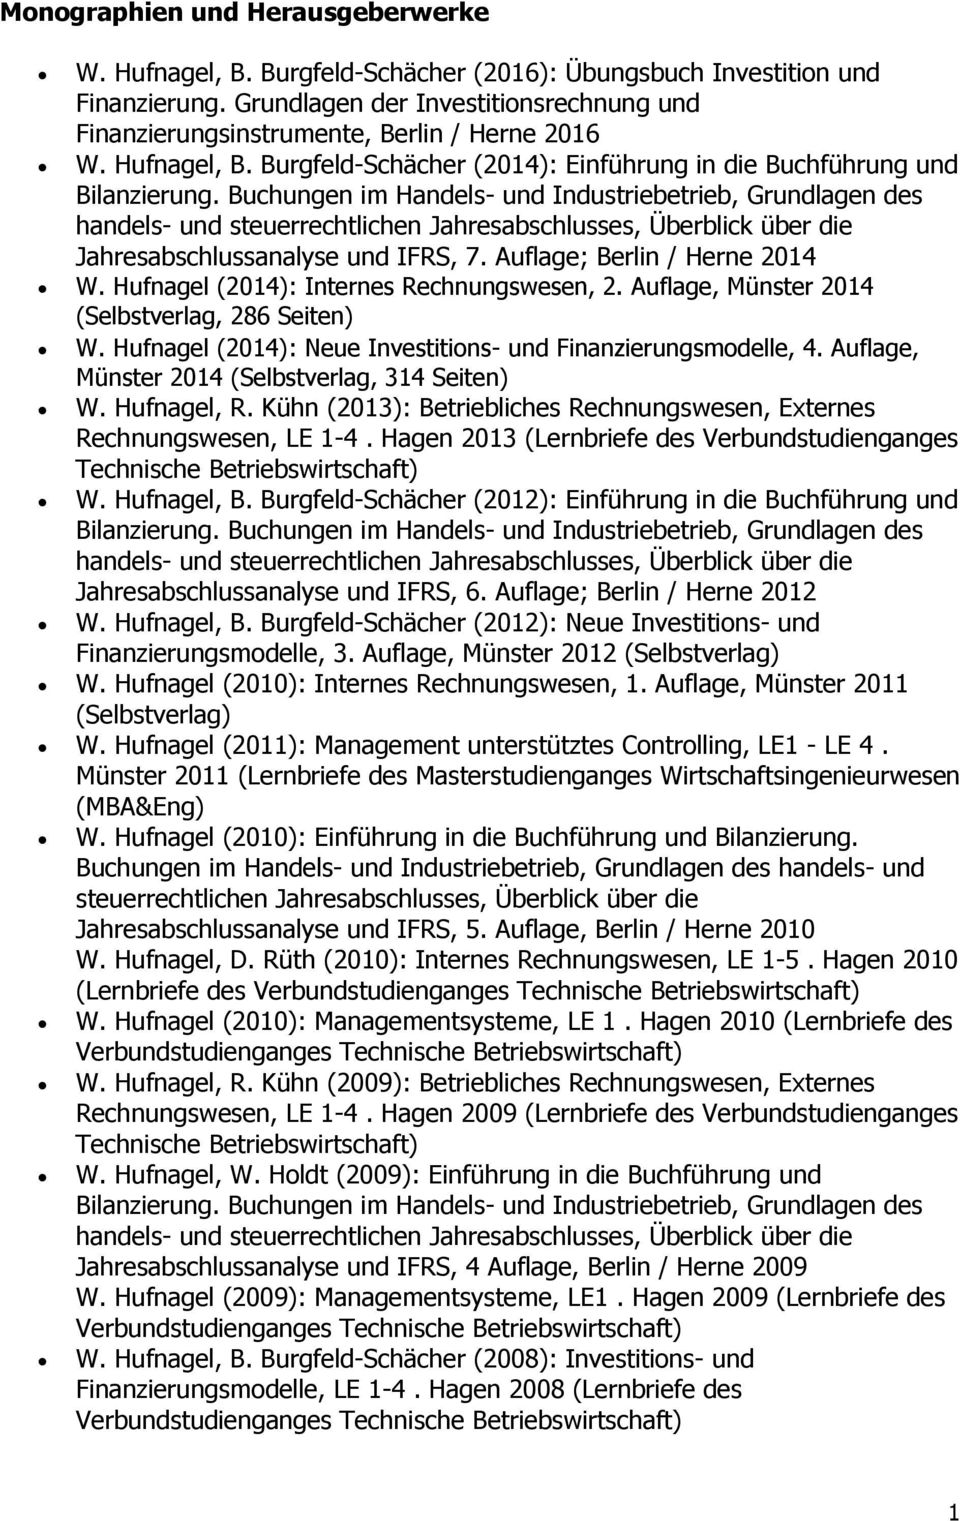 Auflage; Berlin / Herne 2014 W. Hufnagel (2014): Internes Rechnungswesen, 2. Auflage, Münster 2014 (Selbstverlag, 286 Seiten) W. Hufnagel (2014): Neue Investitions- und Finanzierungsmodelle, 4.